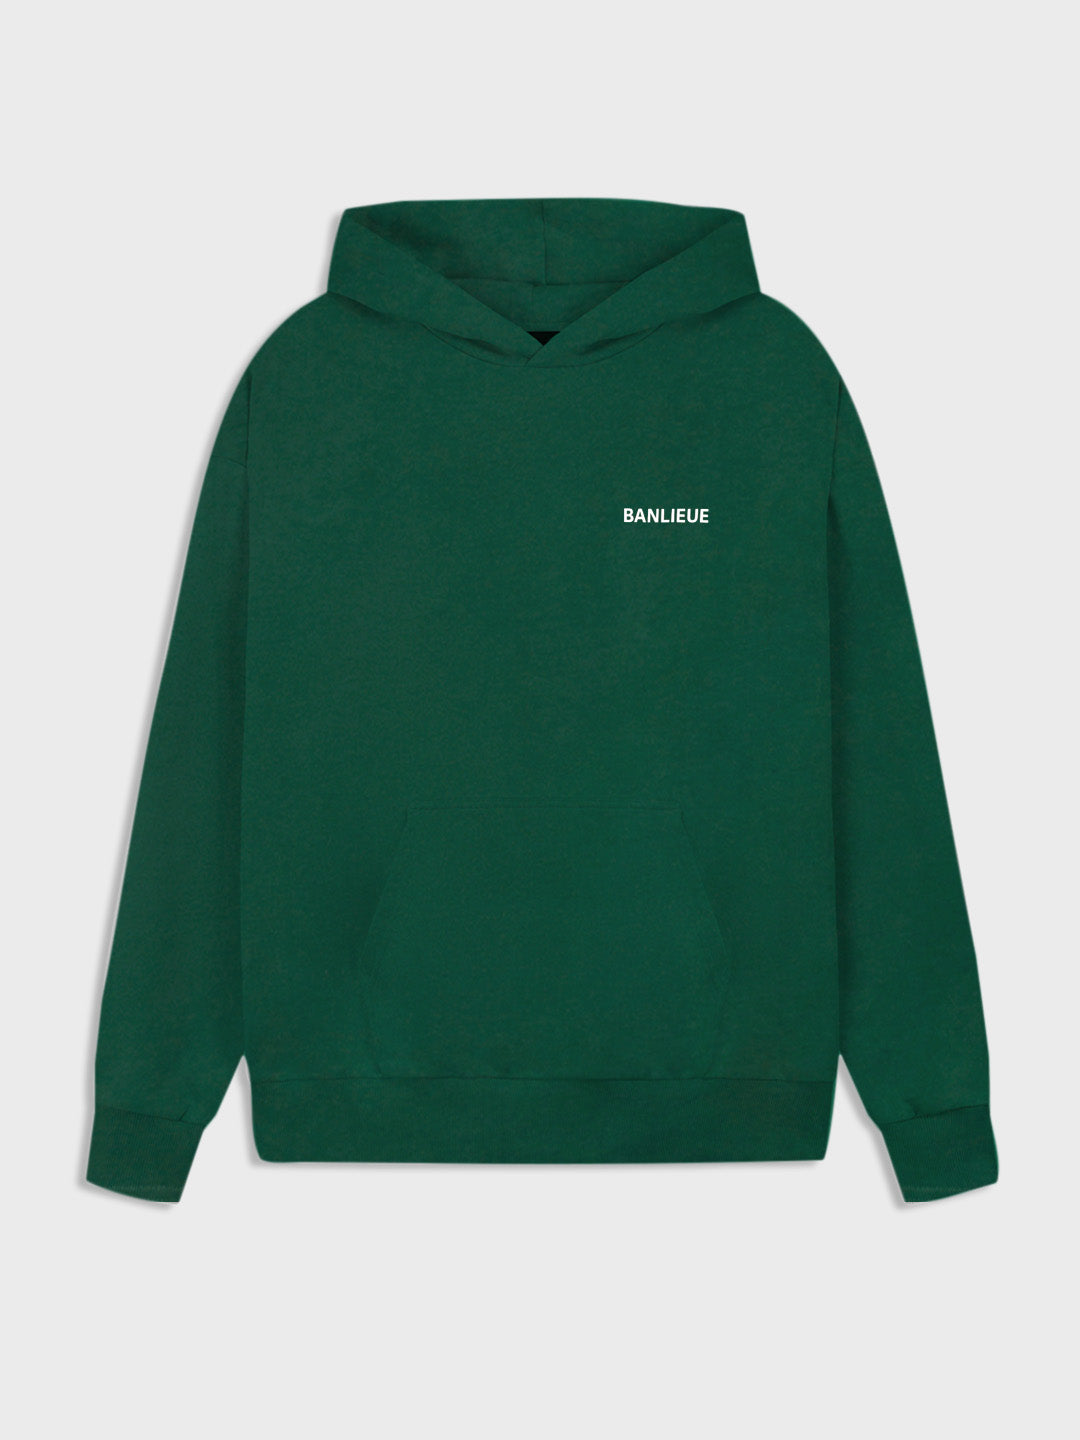 banlieue hoodie groen